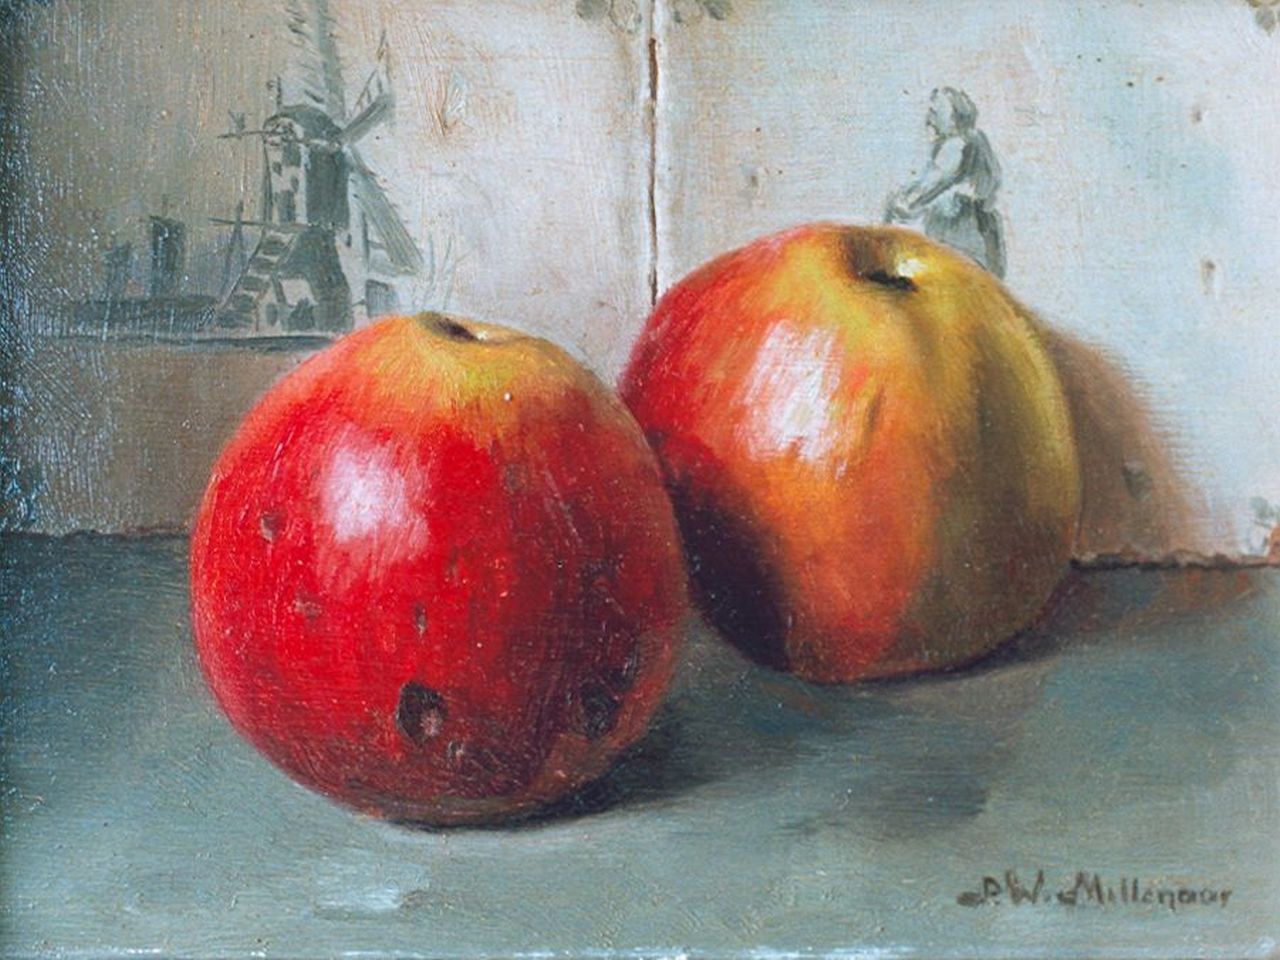 Millenaar P.W.  | Pieter Wilhelm Millenaar, Twee appels voor een tegelwand, olieverf op paneel 18,3 x 24,2 cm, gesigneerd rechtsonder